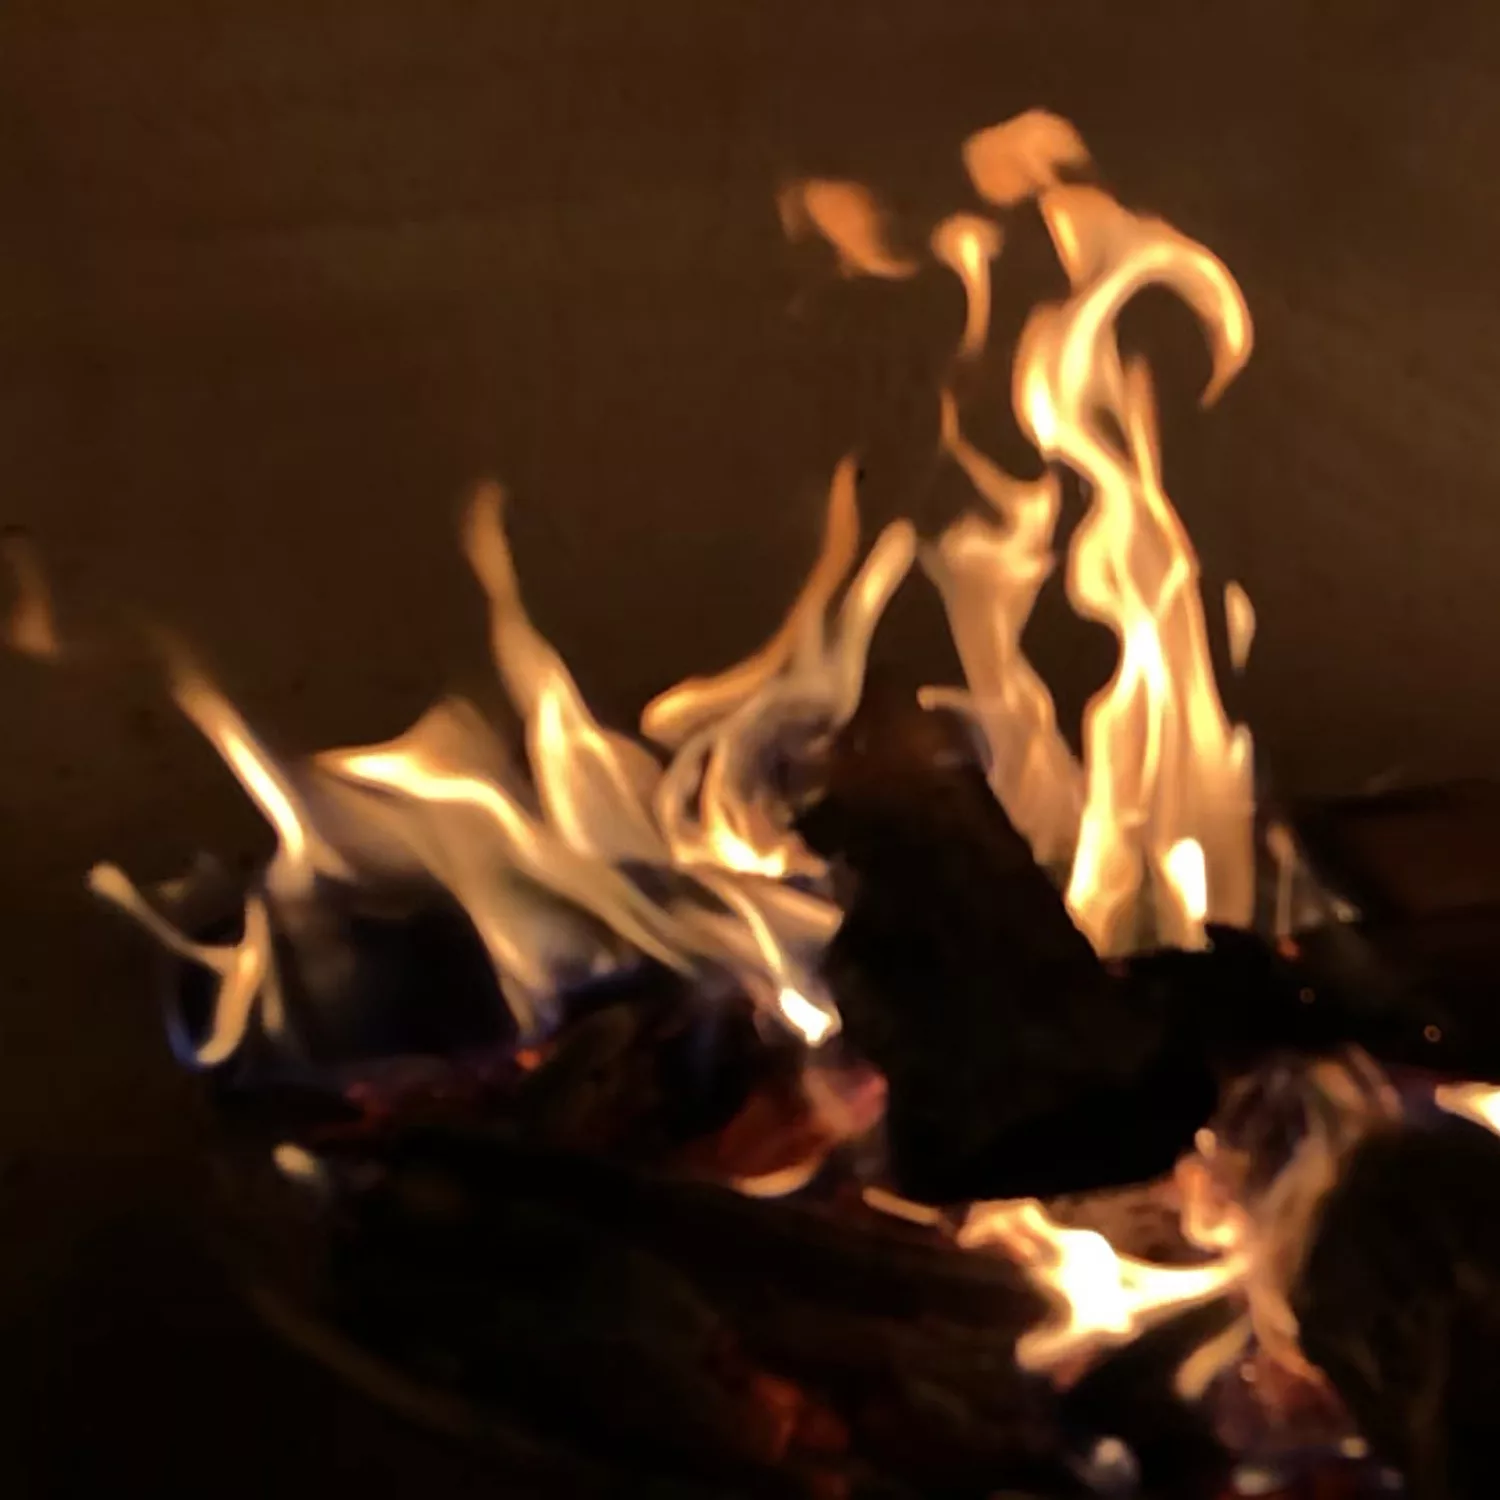 焚き火の思い出 残せてますか Iphoneで綺麗な焚き火写真を撮影する方法 焚き火のコツ Be Pal キャンプ アウトドア 自然派生活の情報源ビーパル